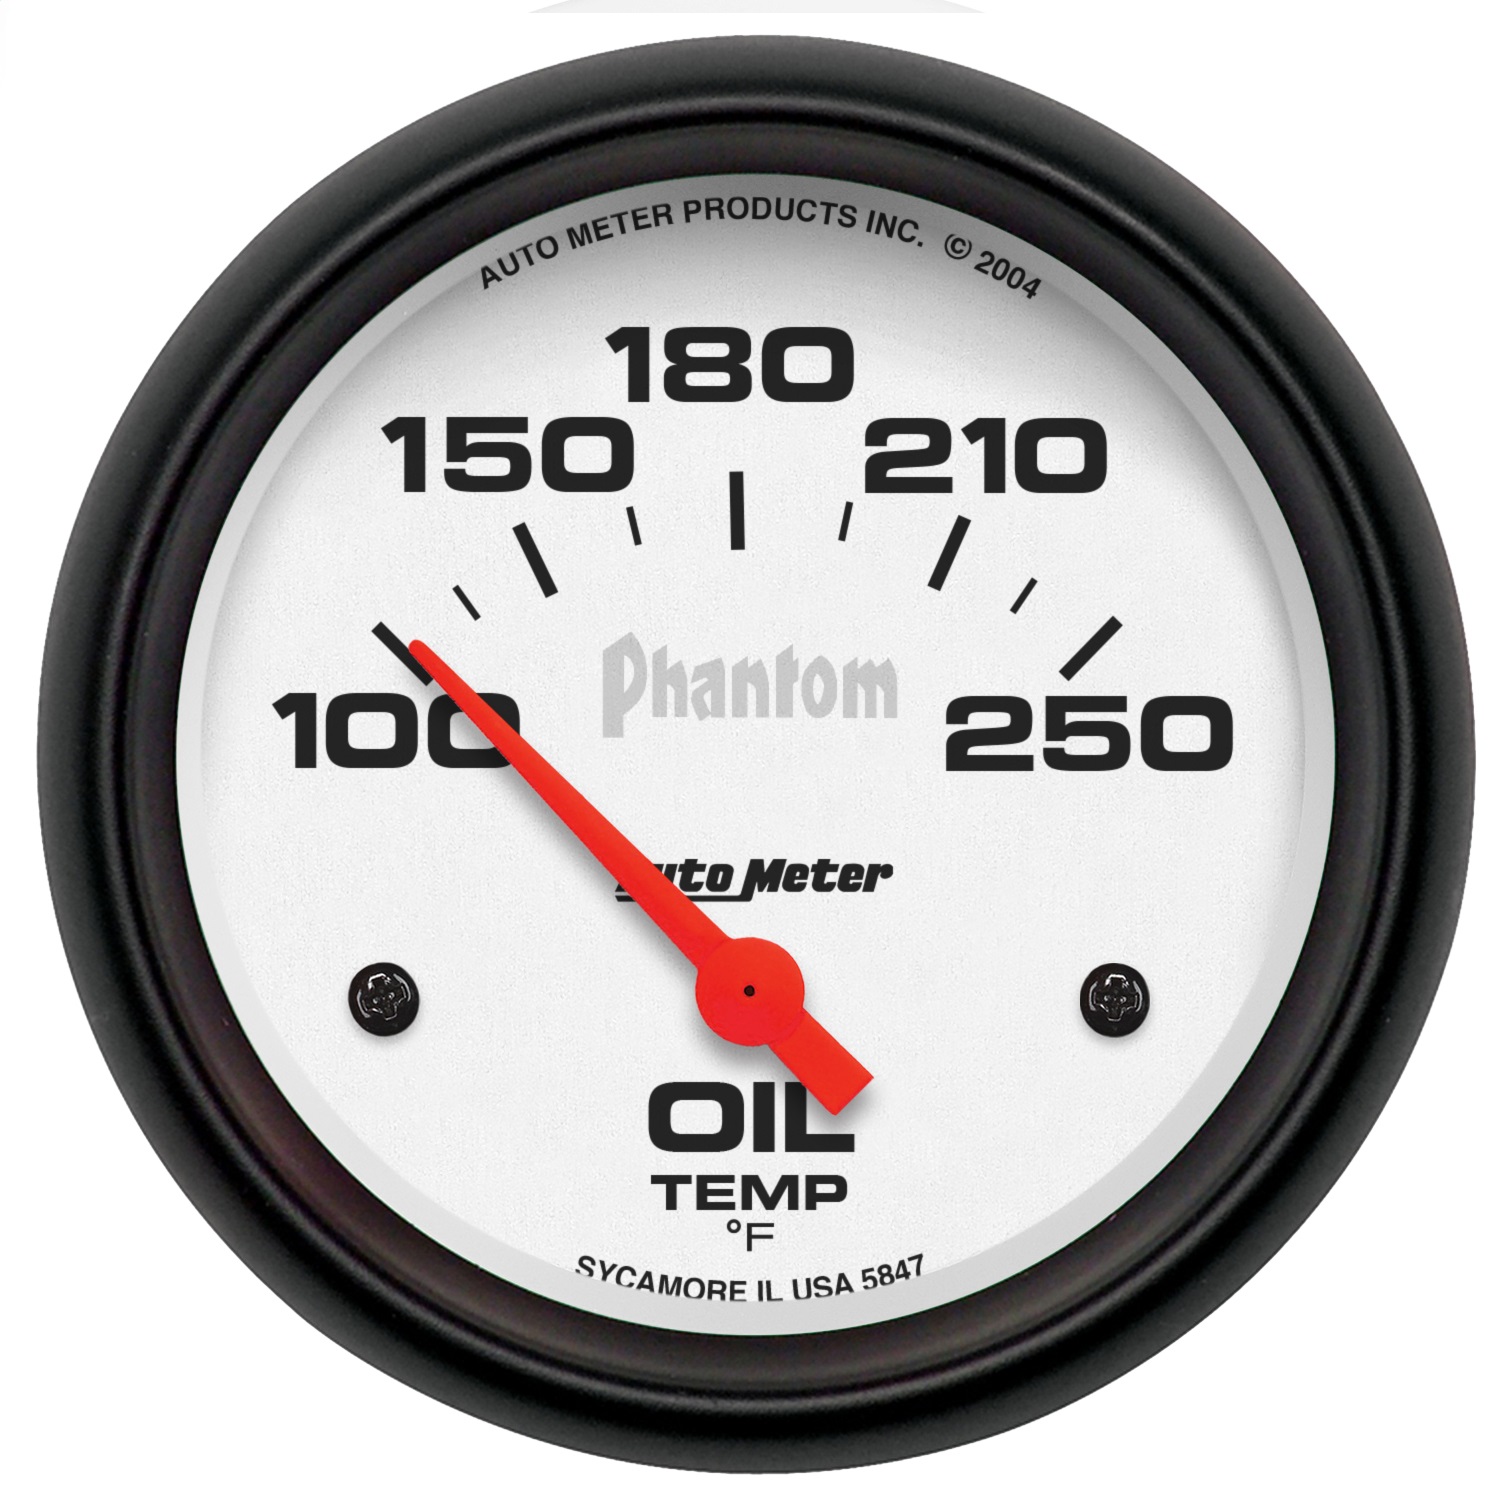 Auto Meter Auto Meter 5847 Phantom; Electric Oil Temperature Gauge